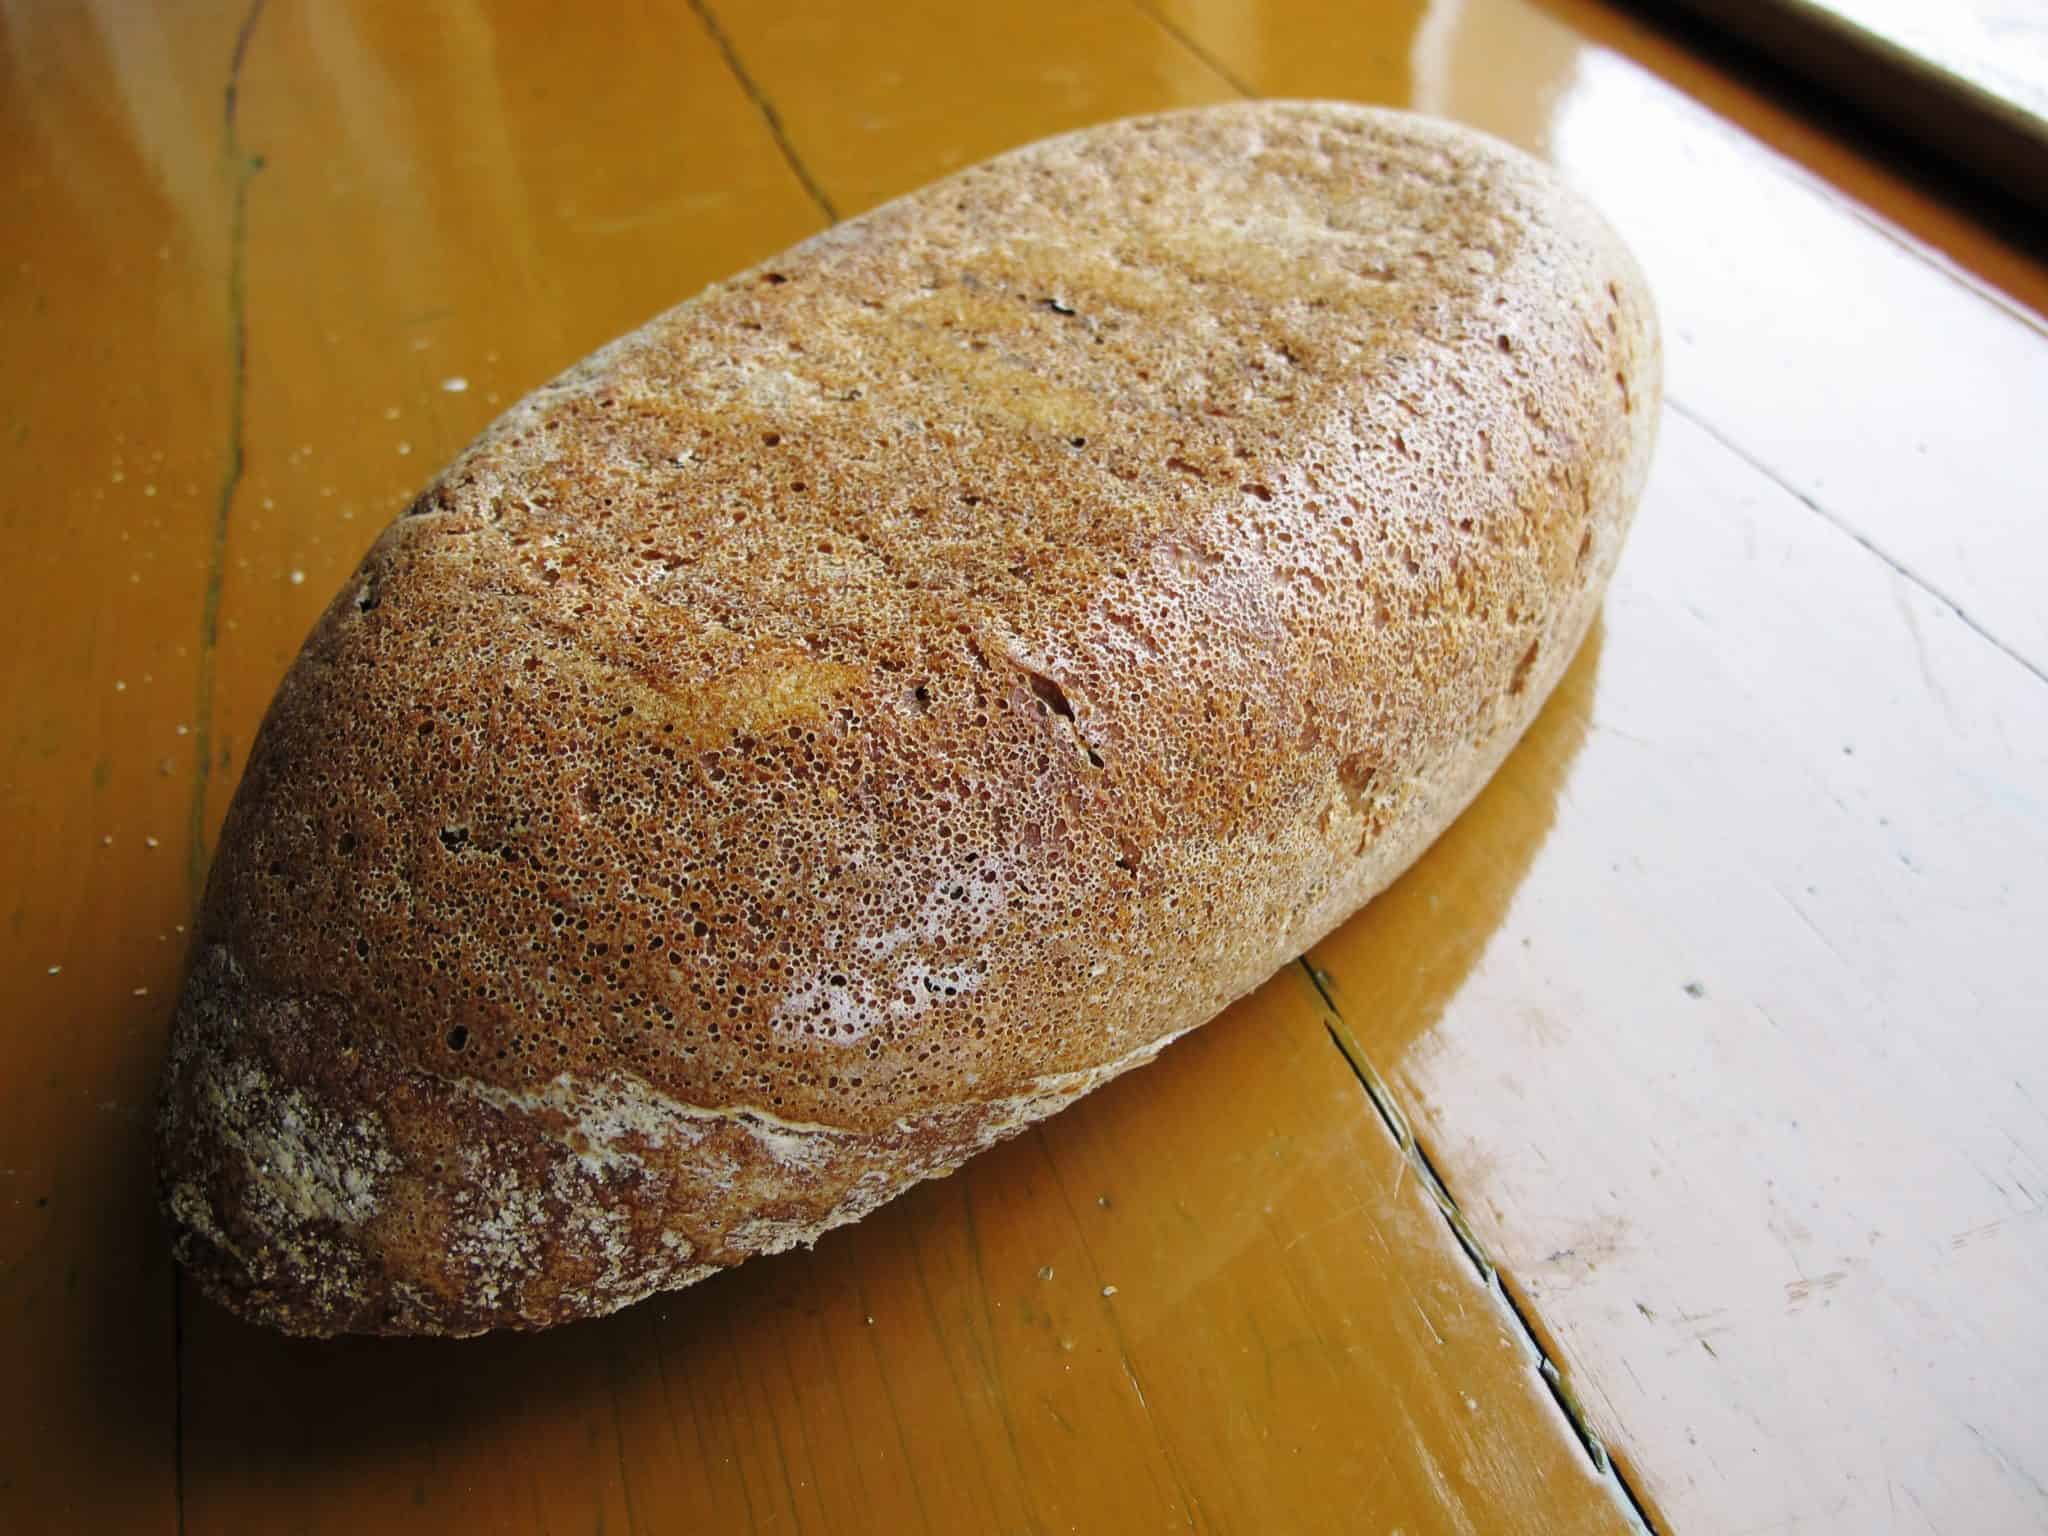 https://www.thebreadshebakes.com/wp-content/uploads/2014/03/Lekue-bread-maker-bottom-of-rye-loaf.jpg